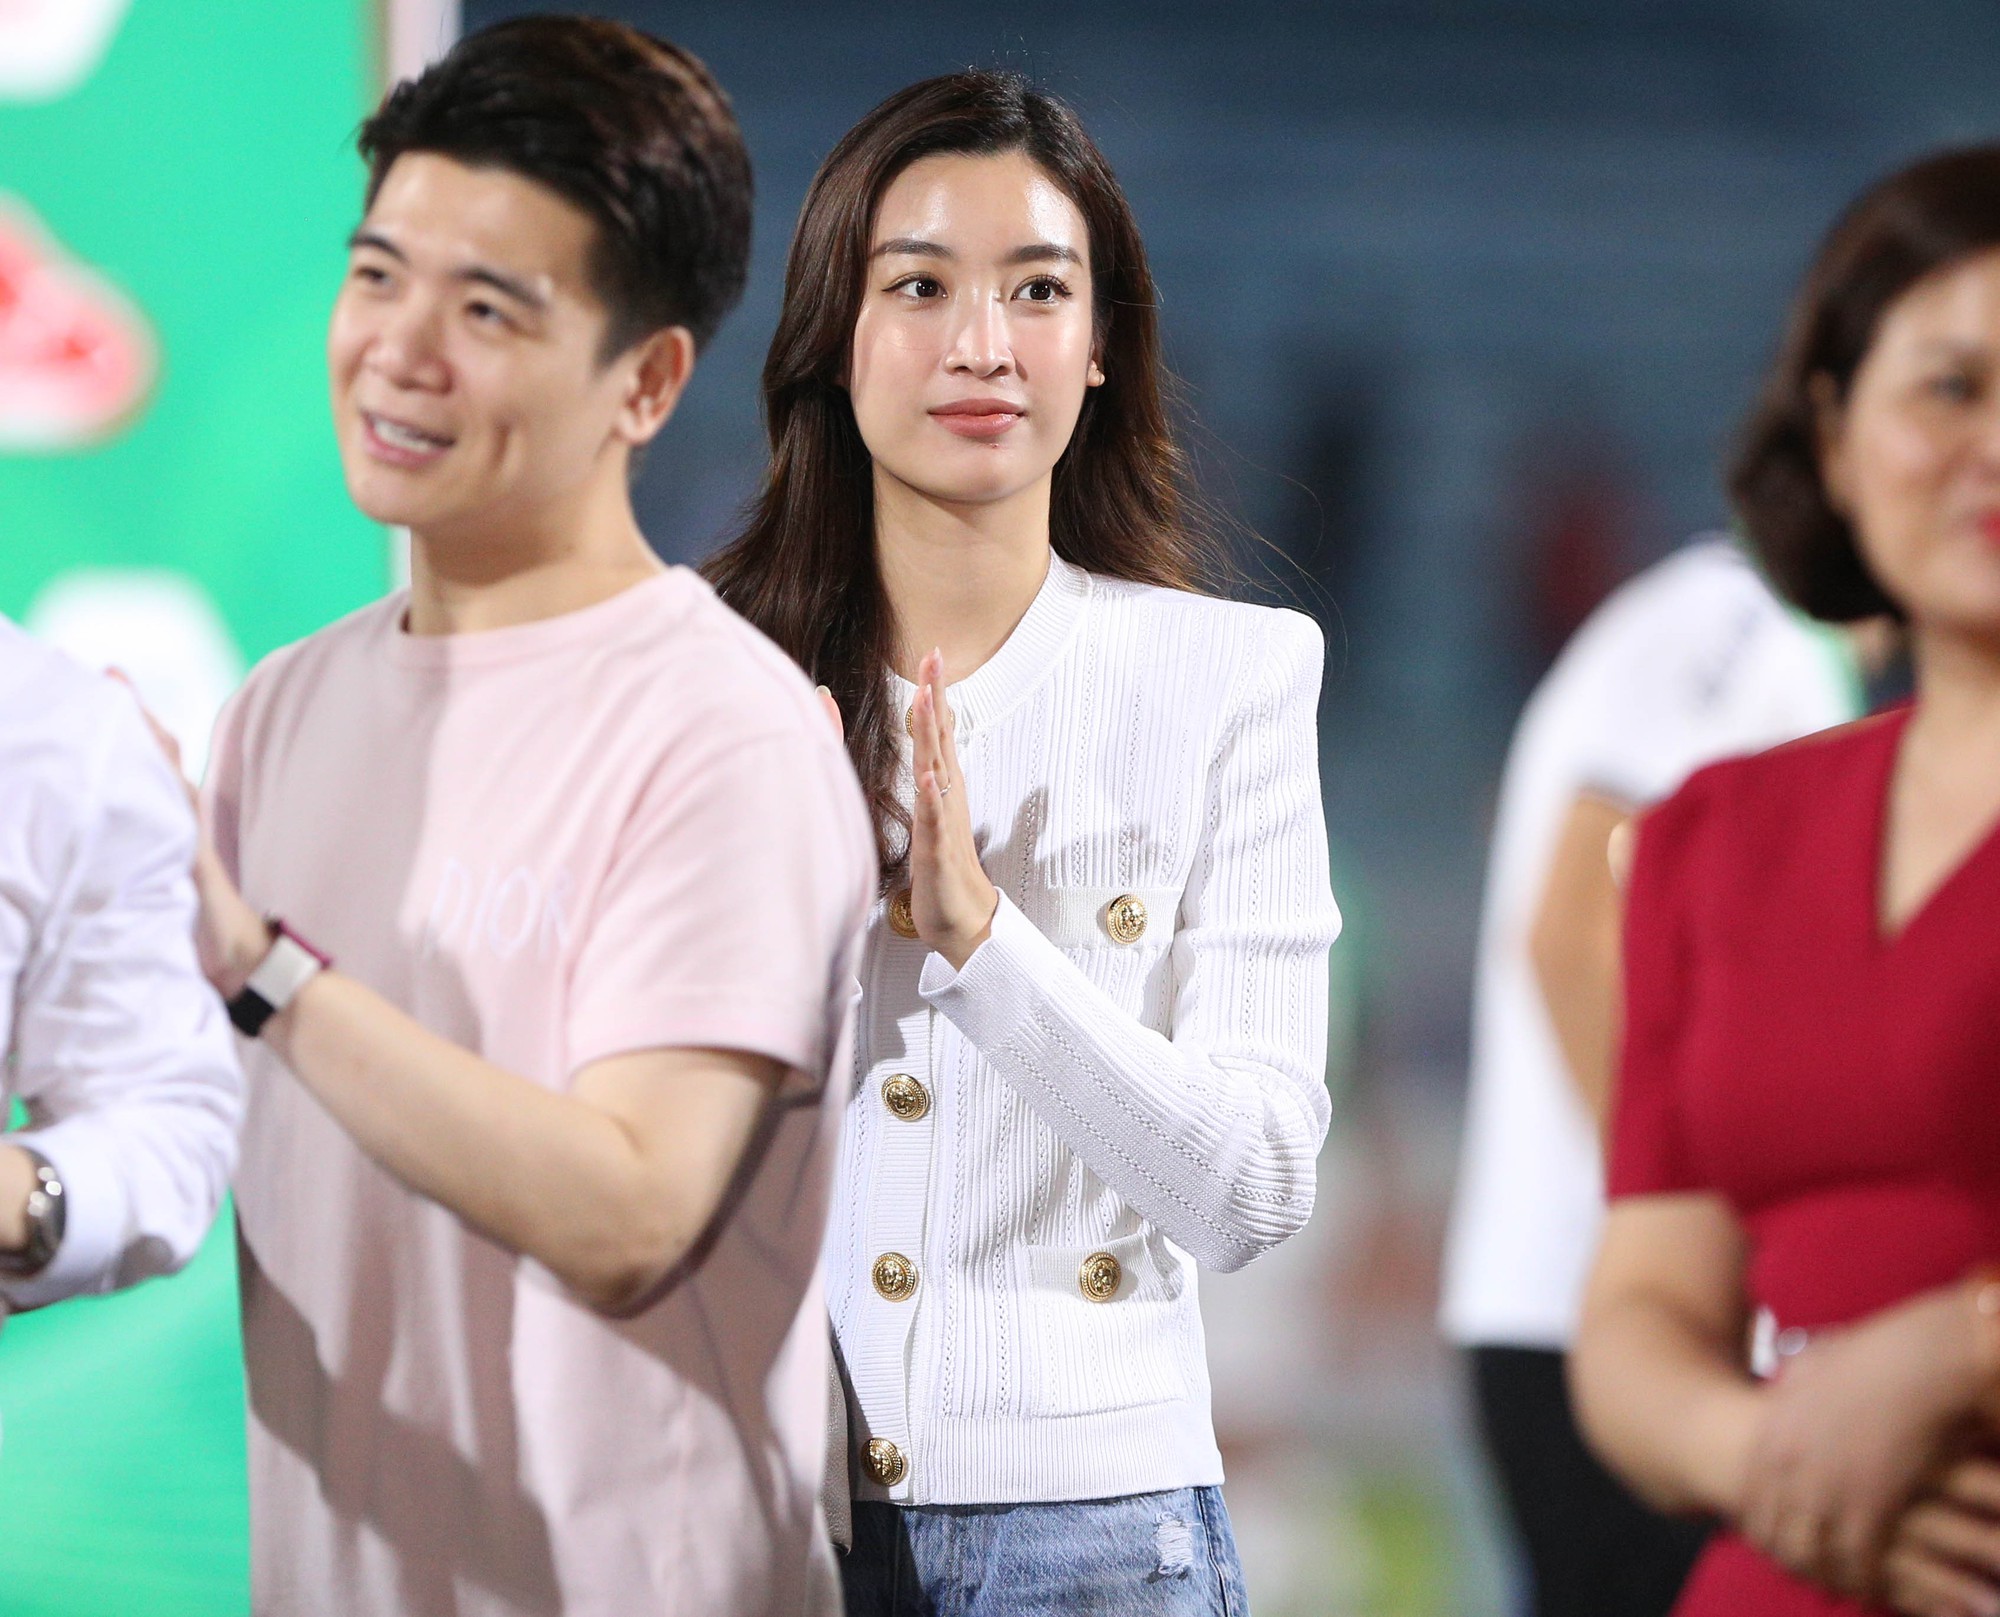 Hoa hậu Đỗ Mỹ Linh nâng Cup vô địch cùng Chủ tịch CLB Hà Nội - Ảnh 2.